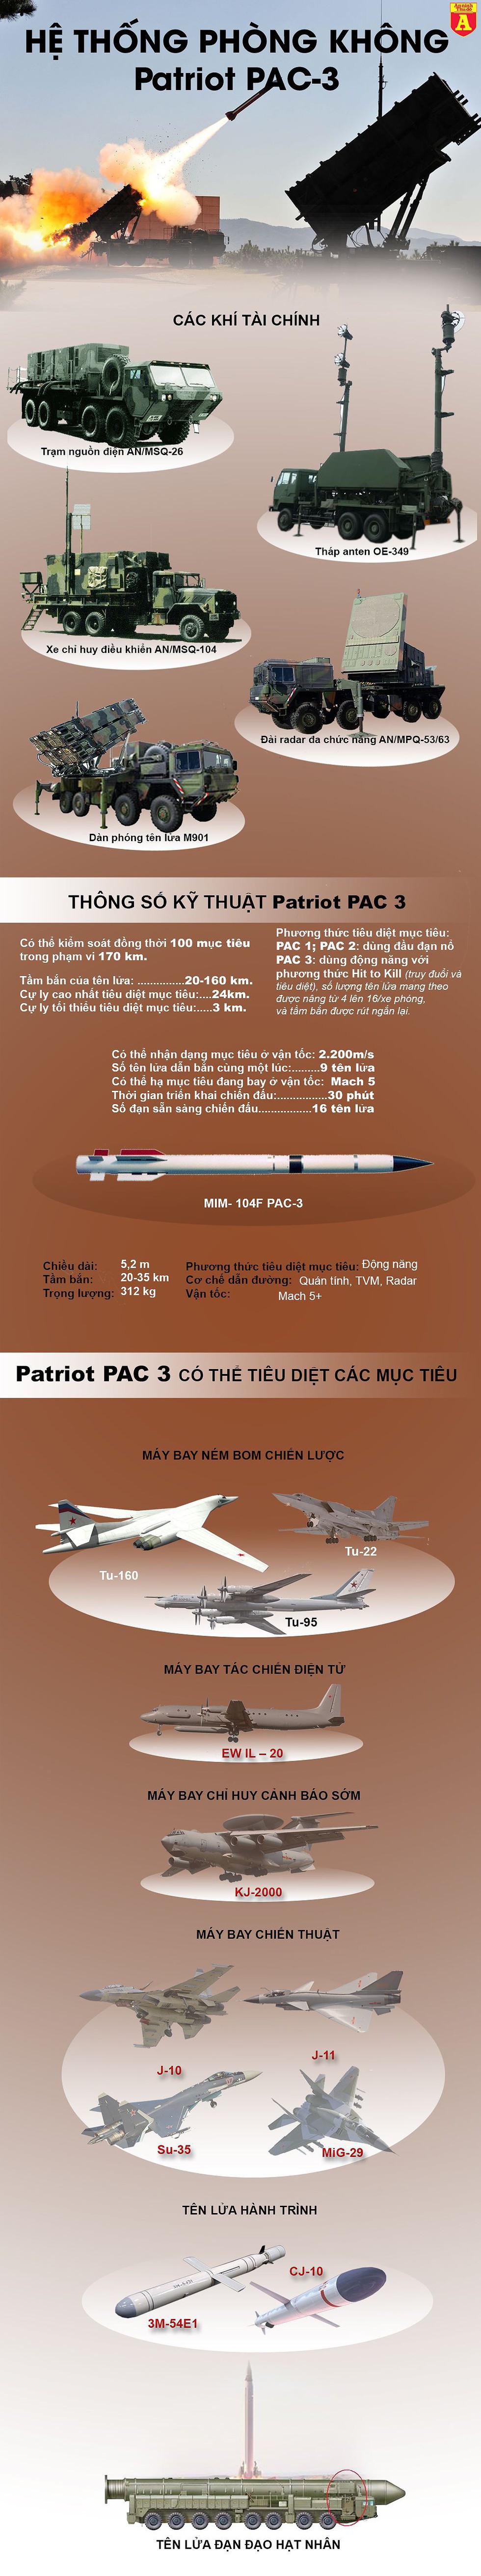  [Infographics] Sau khi Triều Tiên phóng tên lửa, Nhật Bản đáp trả bằng cuộc diễn tập Patriot PAC-3 - Ảnh 1